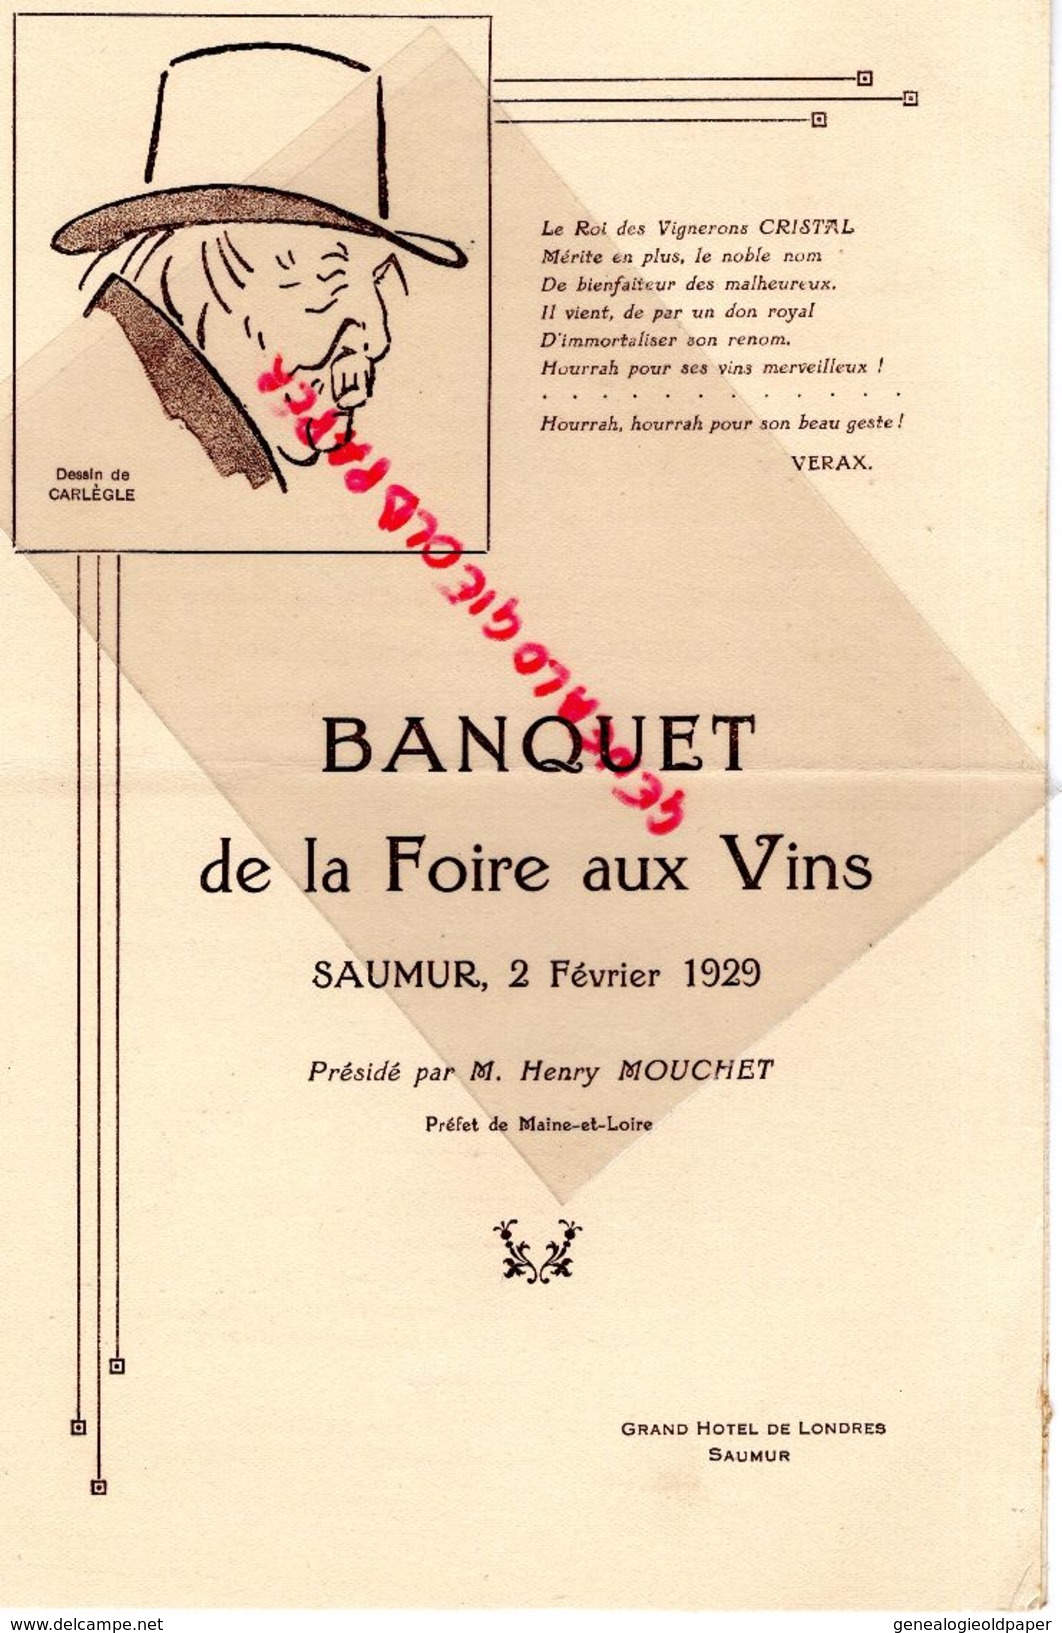 49- SAUMUR- RARE MENU BANQUET FOIRE AUX VINS- 2 FEVRIER 1929- HENRI MOUCHE -DESSIN DE CARLEGLE-GRAND HOTEL DE LONDRES - Menükarten